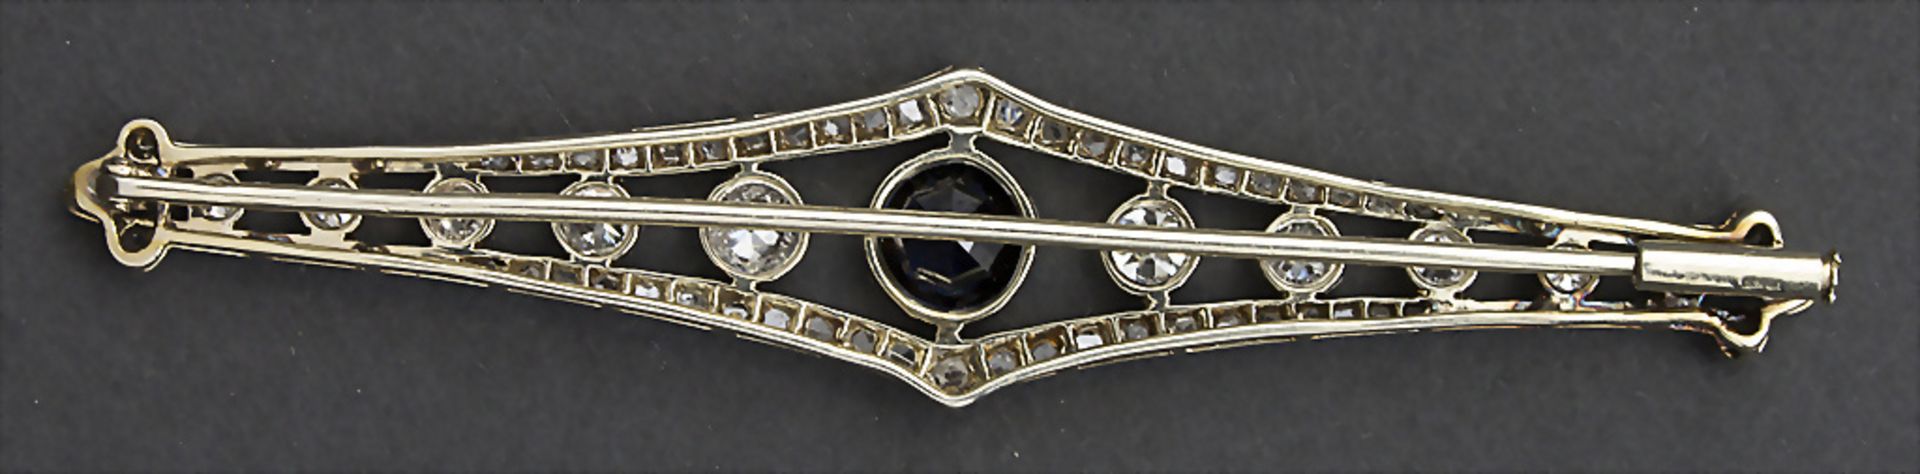 Art Déco Brosche mit Saphiren und Diamanten / An Art Déco brooch with Sapphires and Diamonds, ... - Image 2 of 2